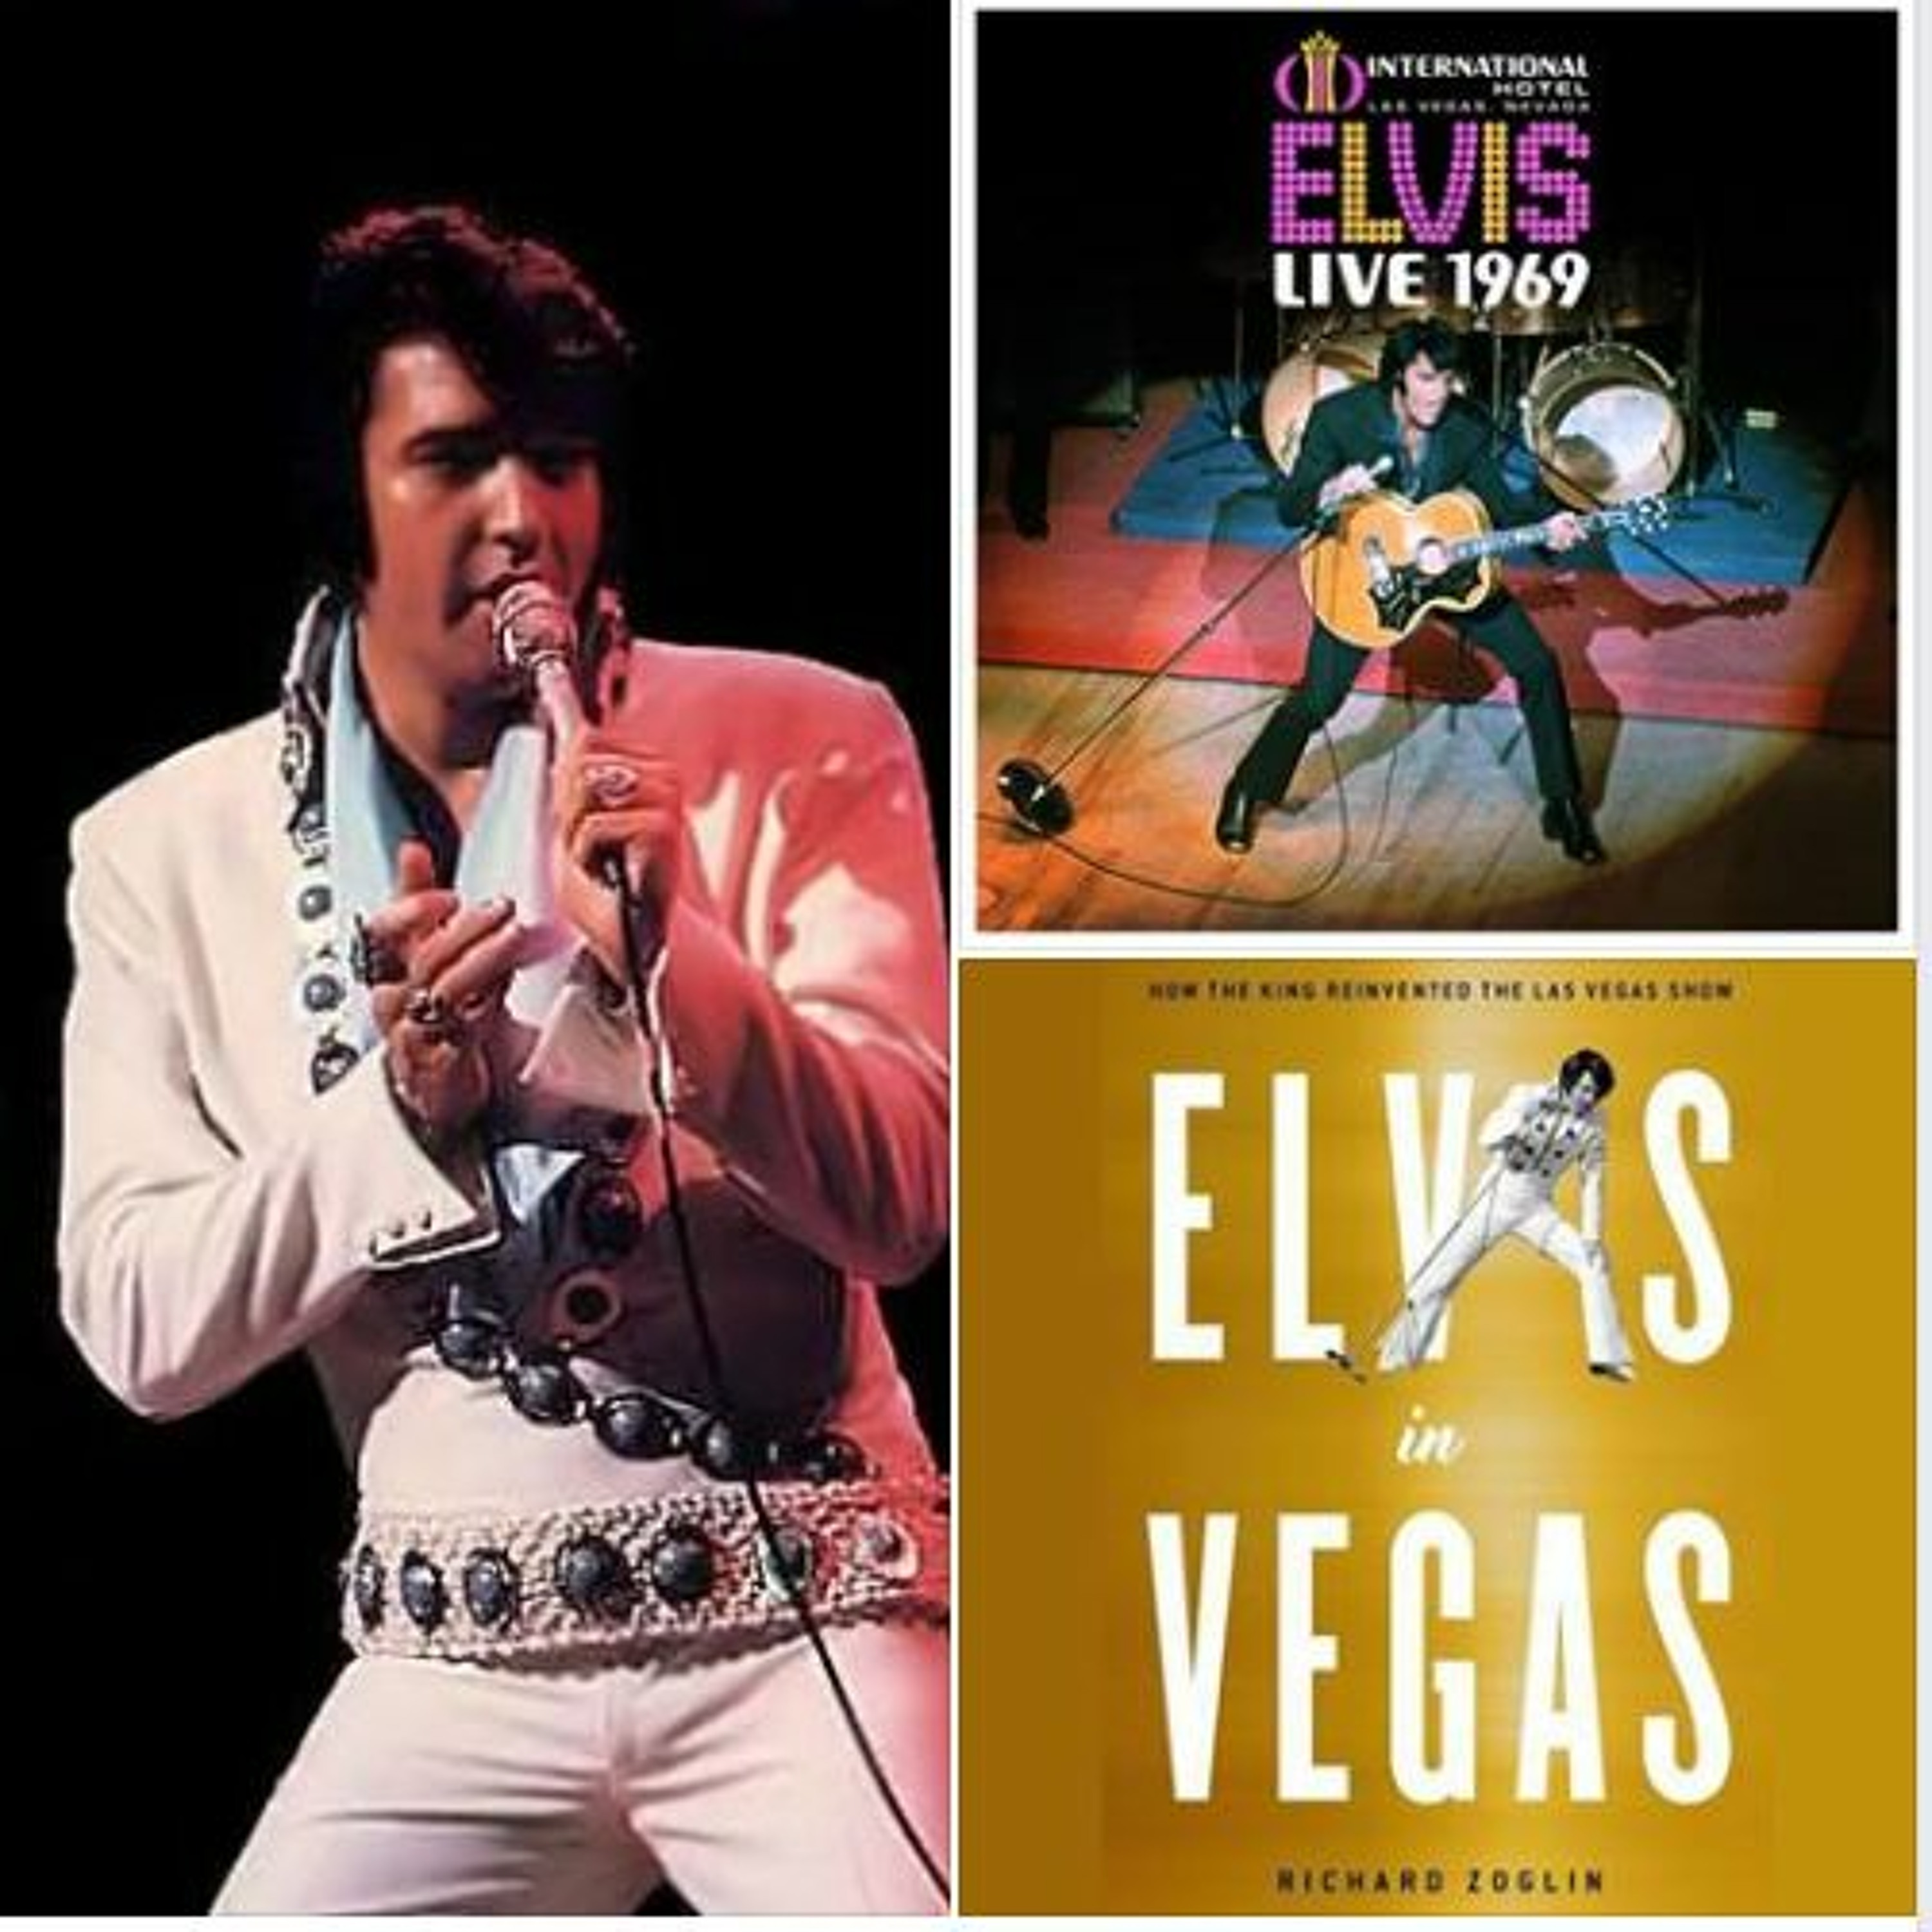 ”Elvis In Vegas” - The Complete Richard Zoglin Interview